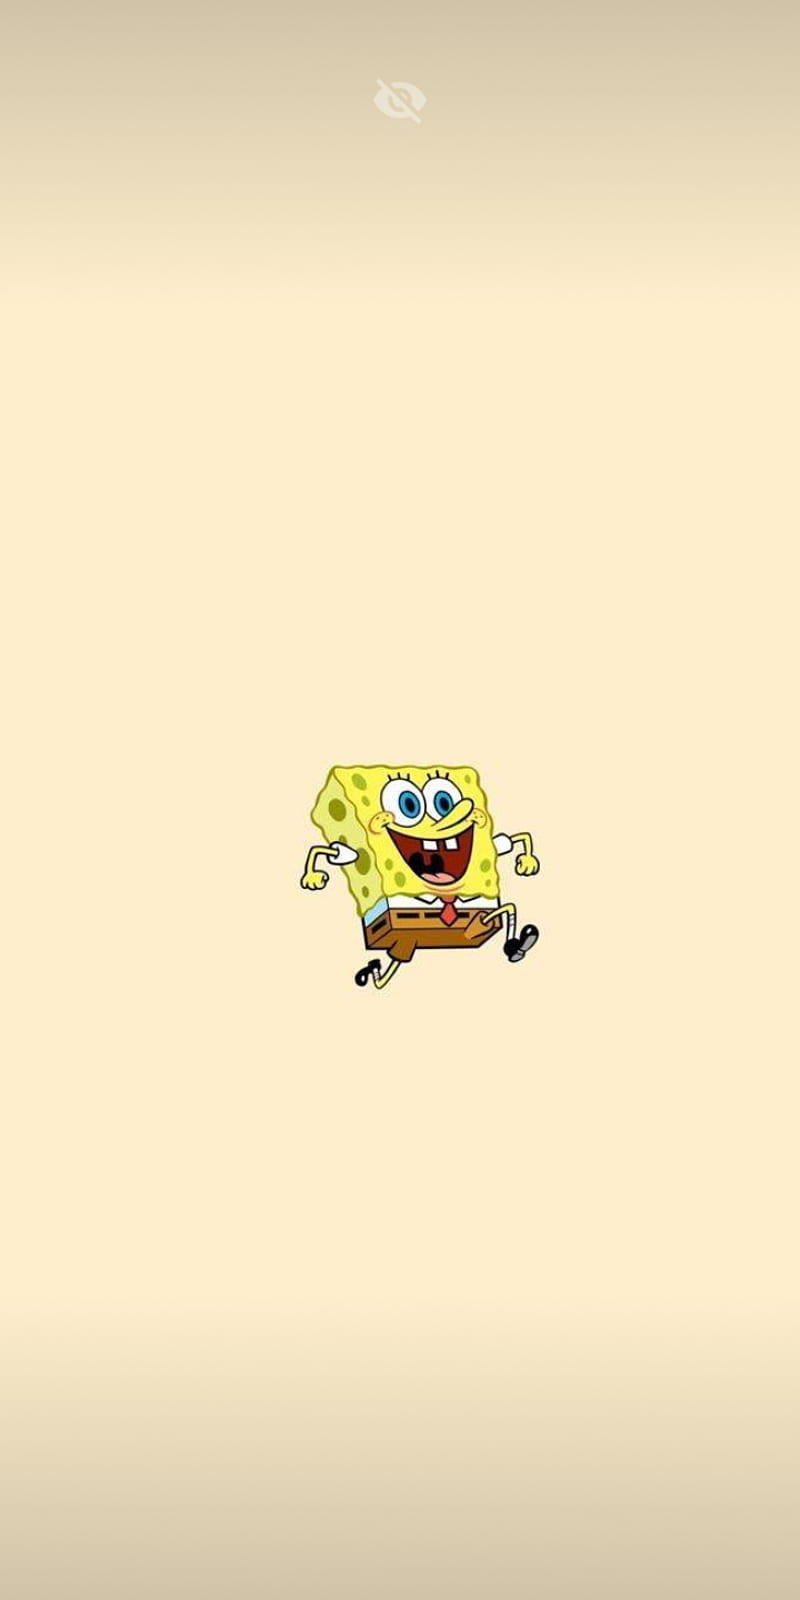 100 Spongebob Meme Wallpapers  Wallpaperscom